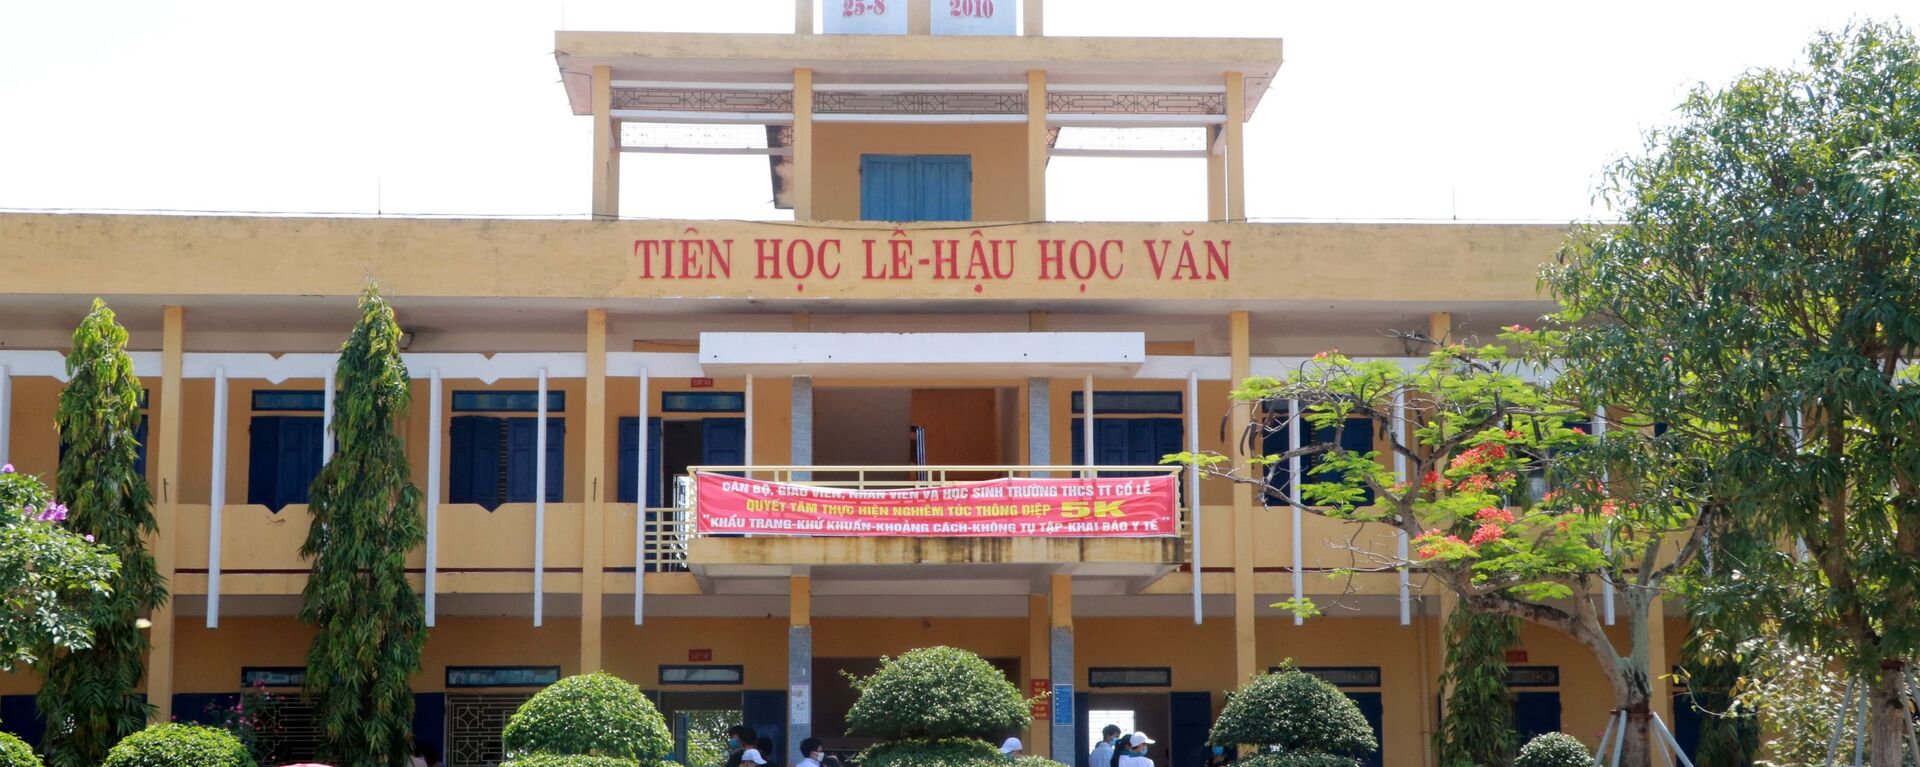 Trường học ở Việt Nam - Sputnik Việt Nam, 1920, 26.05.2021